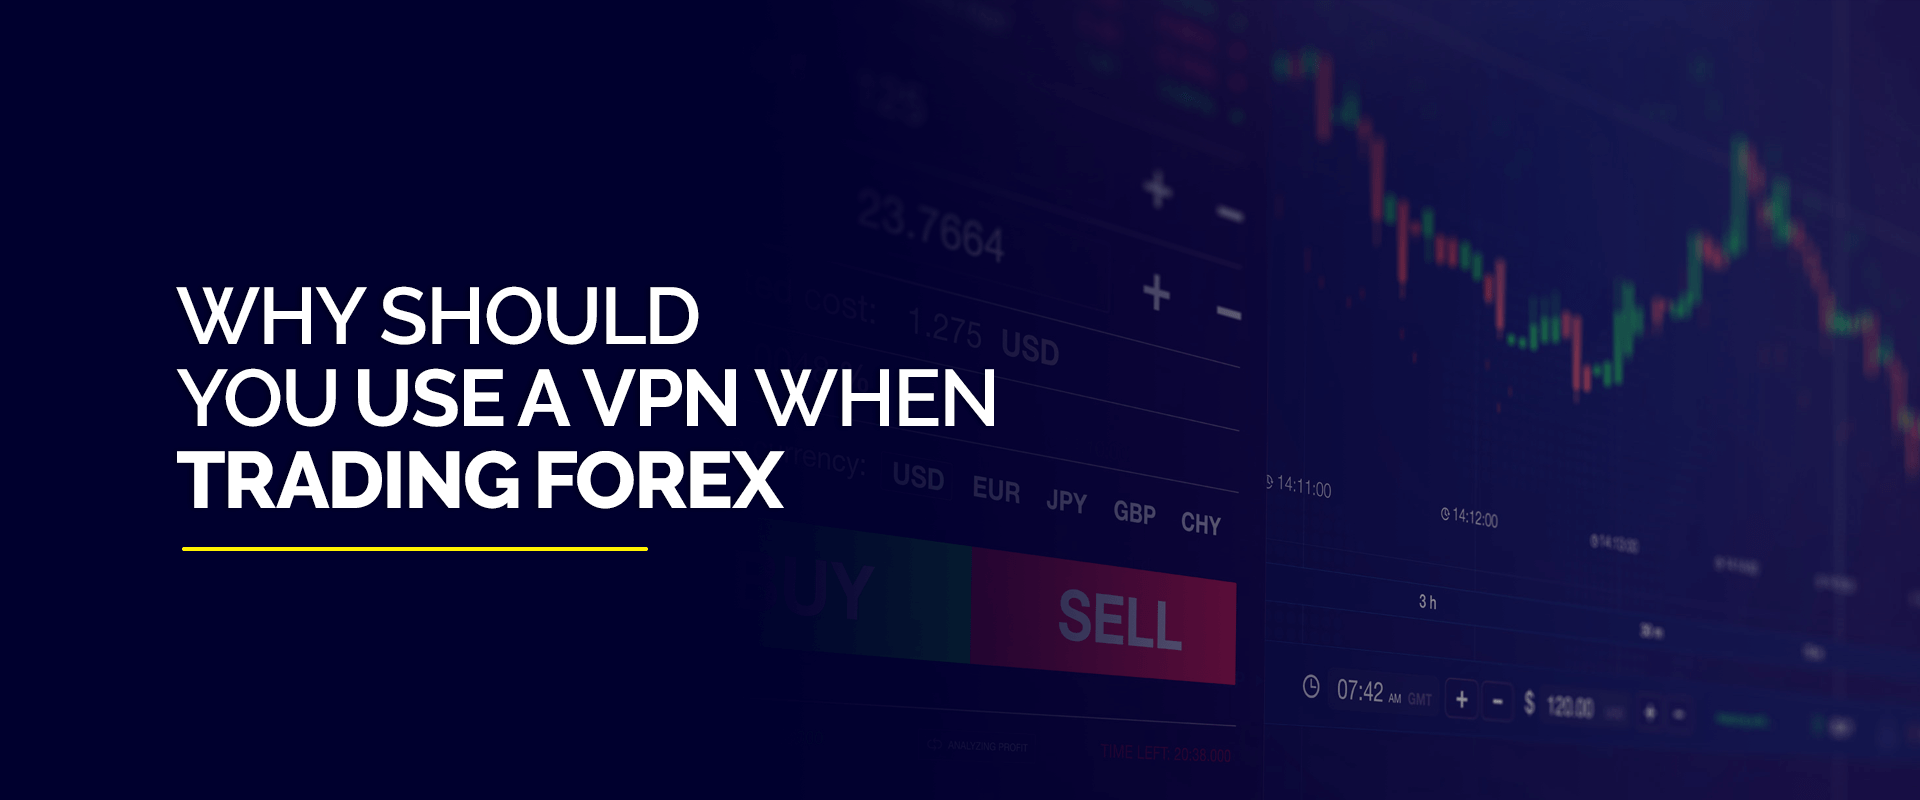 Ce este VPN în Forex?